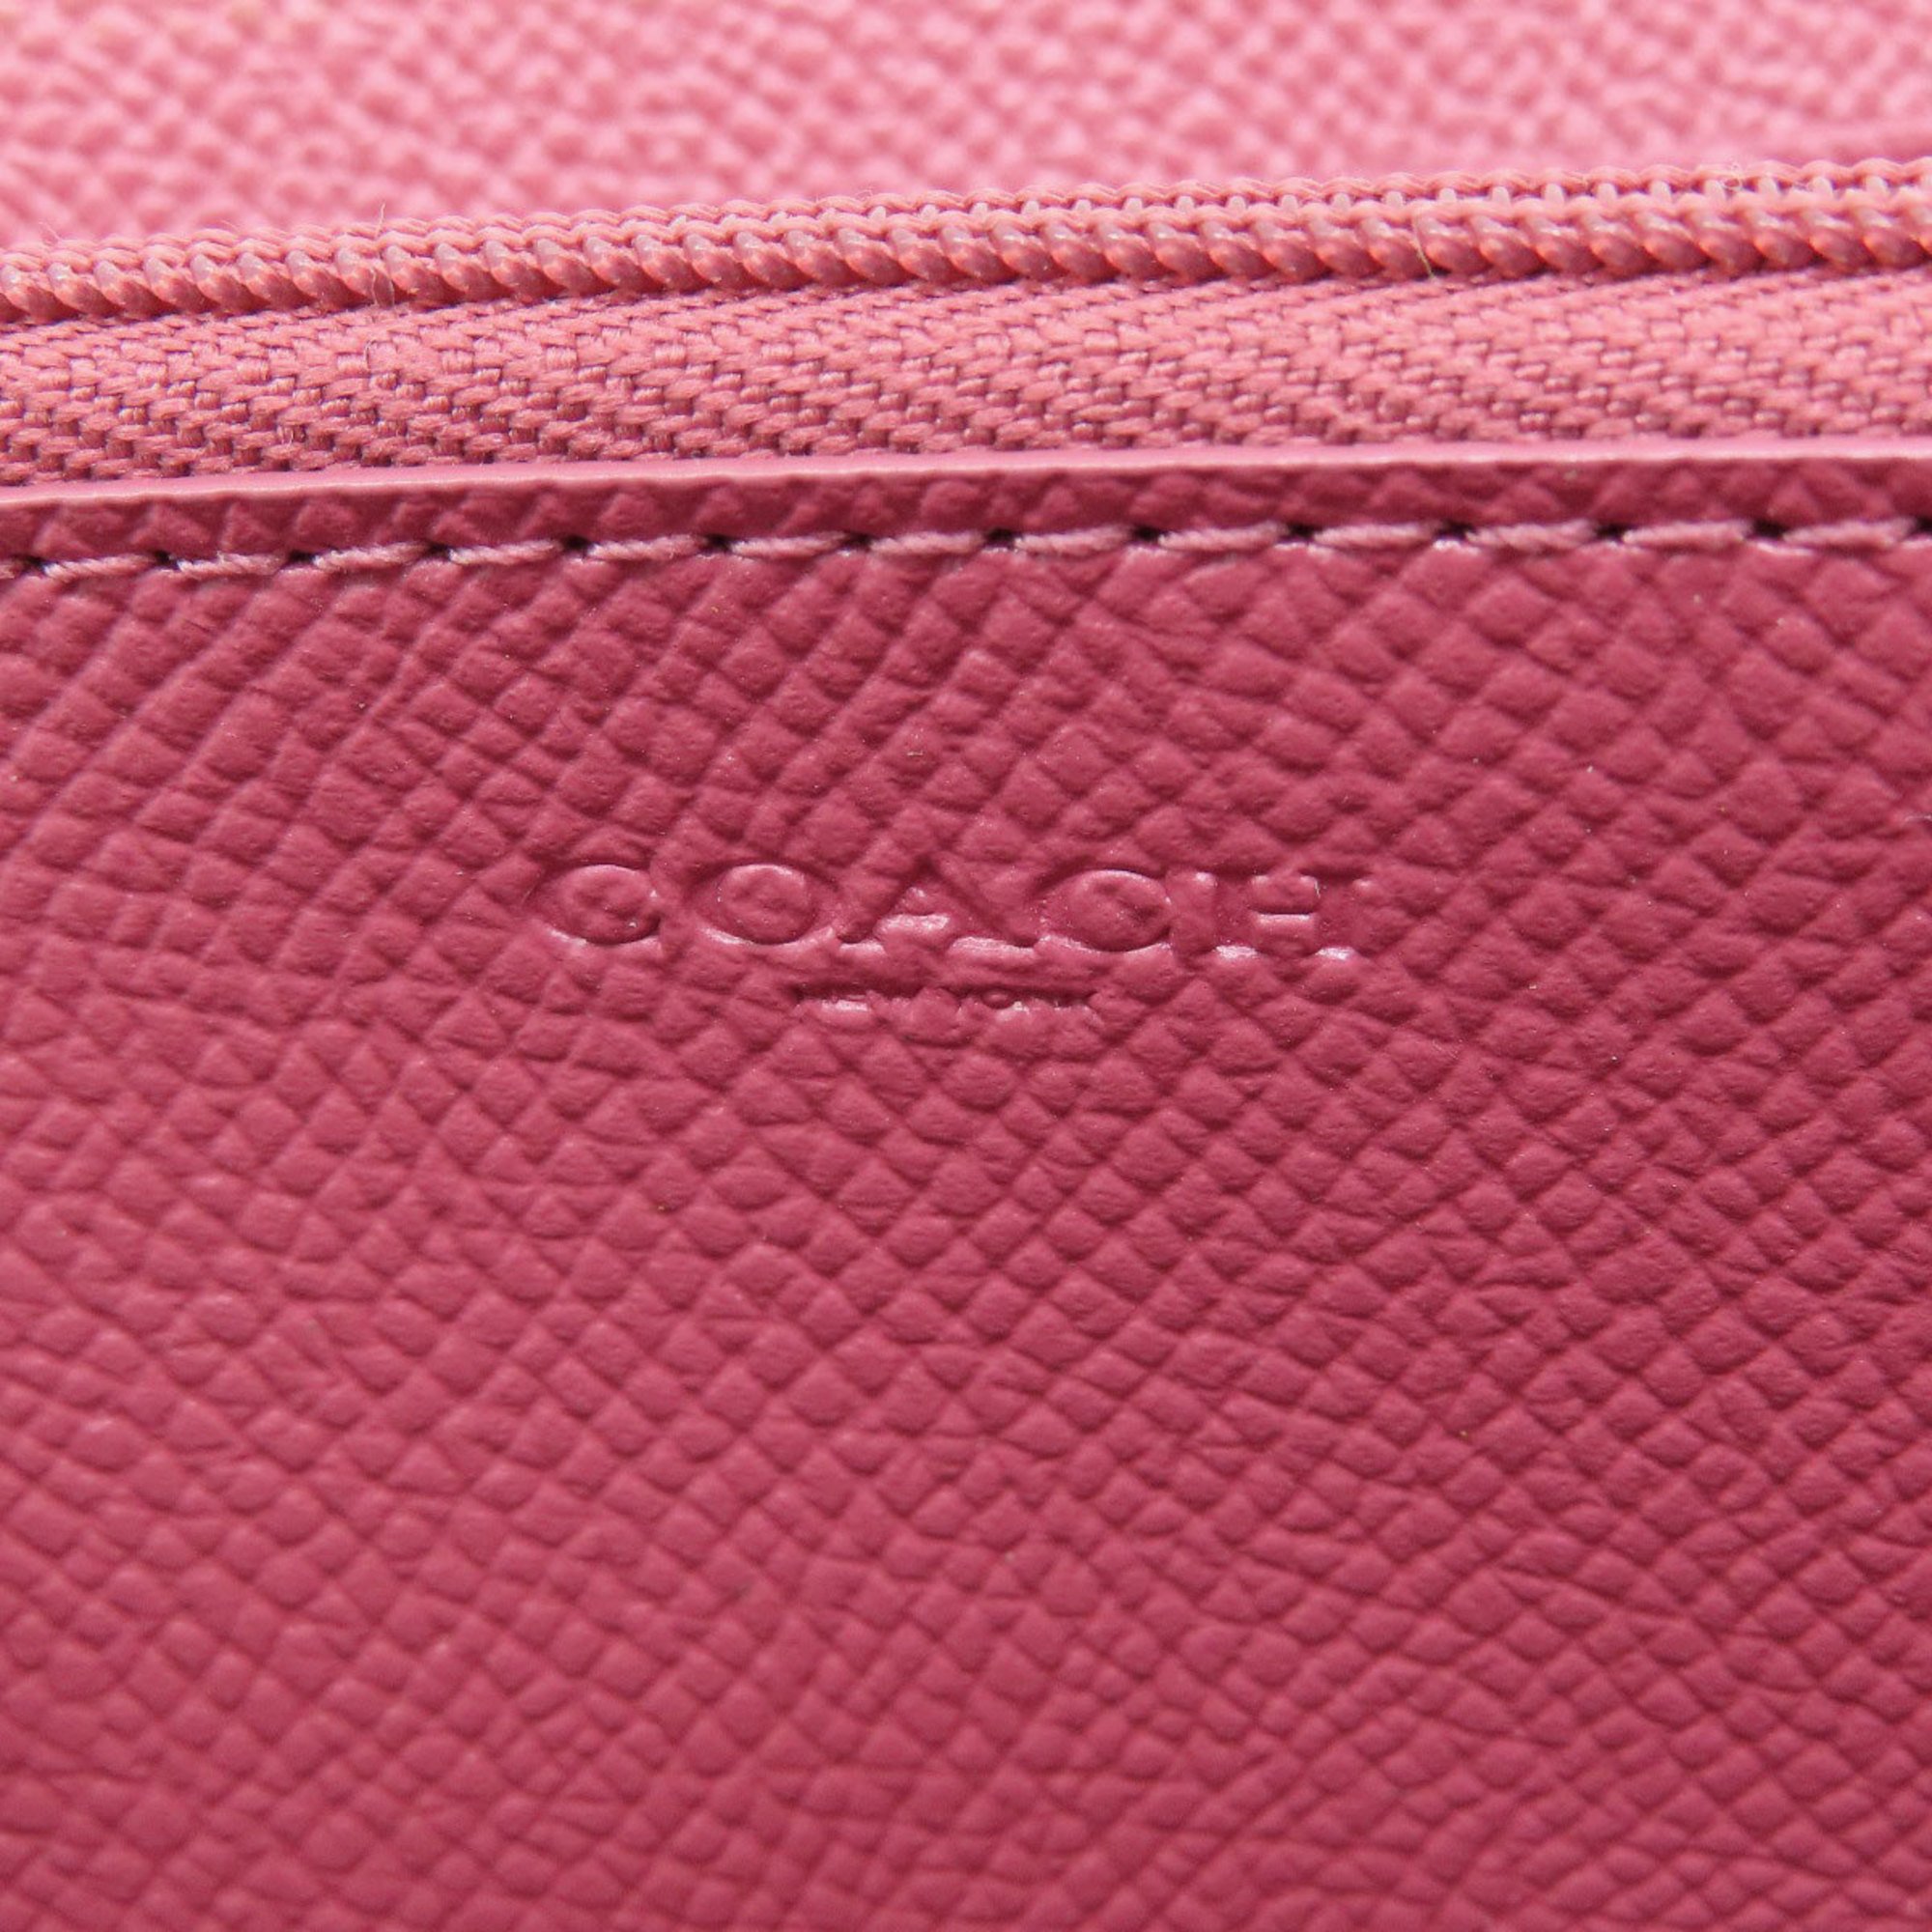 Coach F54007 Metal fittings long wallet leather women's COACH